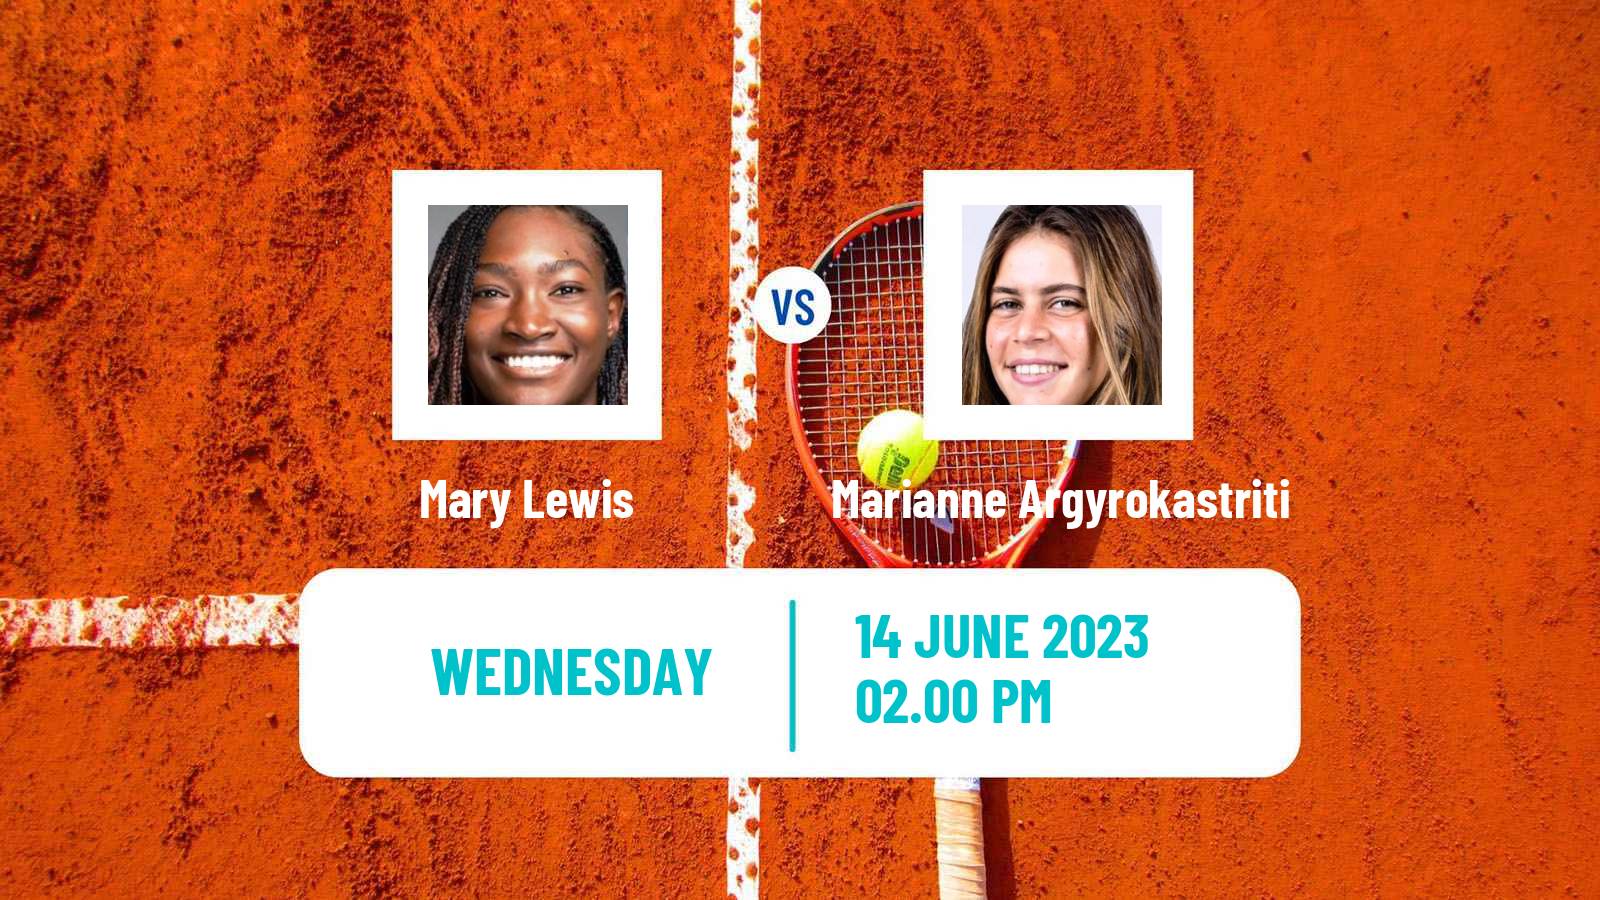 Tennis ITF W15 San Diego Ca 2 Women Mary Lewis - Marianne Argyrokastriti